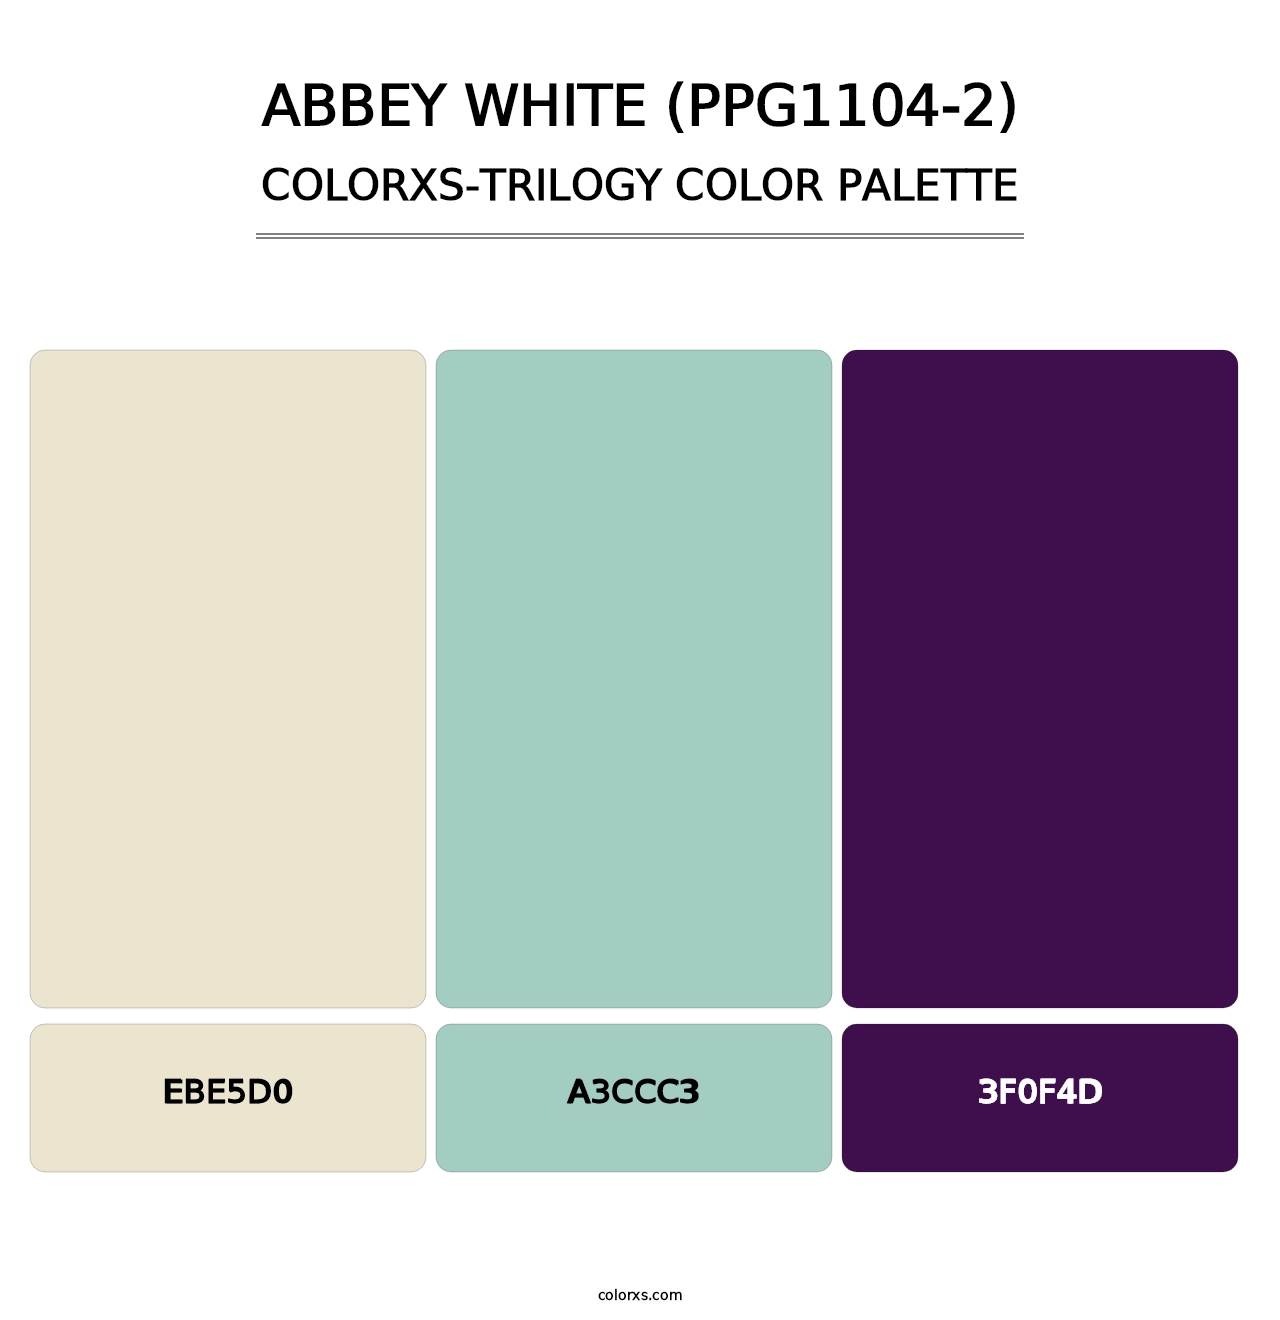 Abbey White (PPG1104-2) - Colorxs Trilogy Palette